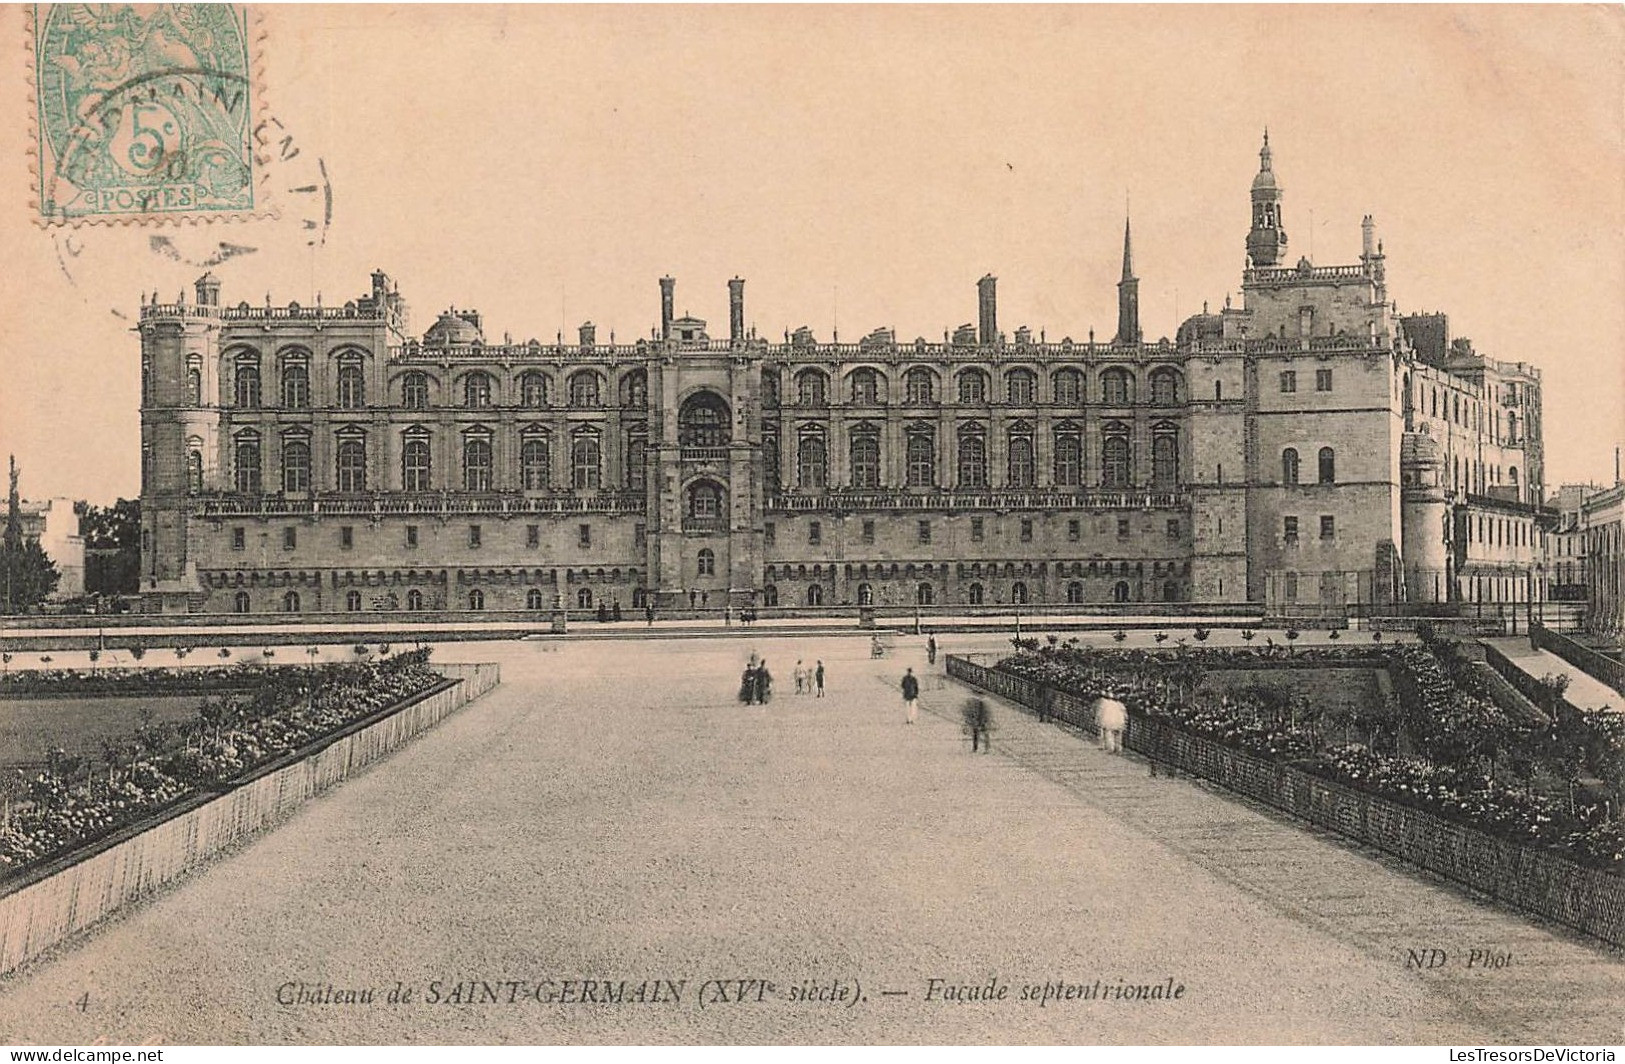 FRANCE - Château De Saint Germain (XVIè Siècle) - Façade Septentoriale - Animé - Carte Postale Ancienne - St. Germain En Laye (Schloß)